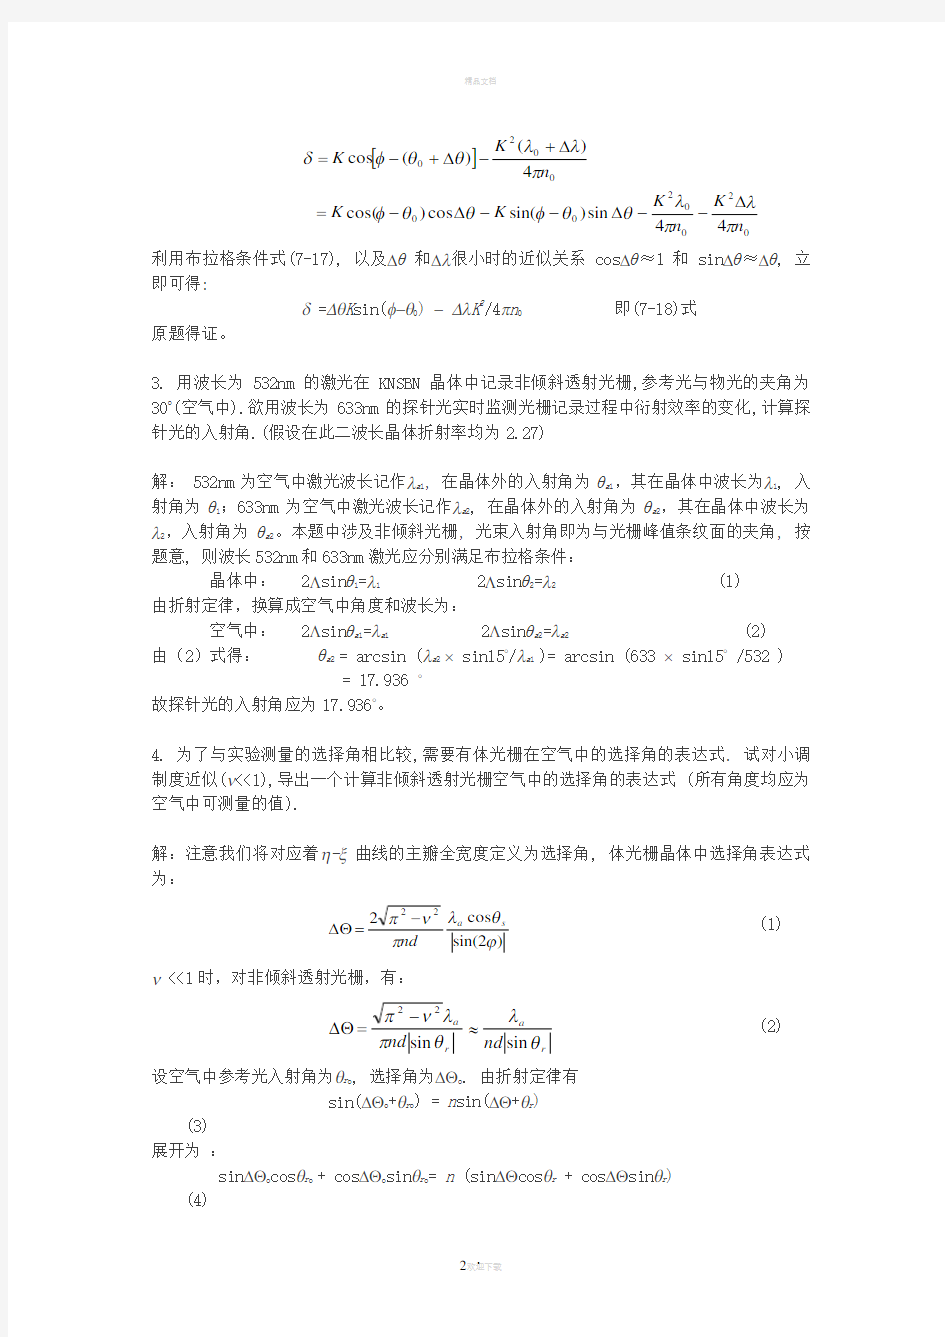 陈家璧版-光学信息技术原理及应用习题解答(7-8章)